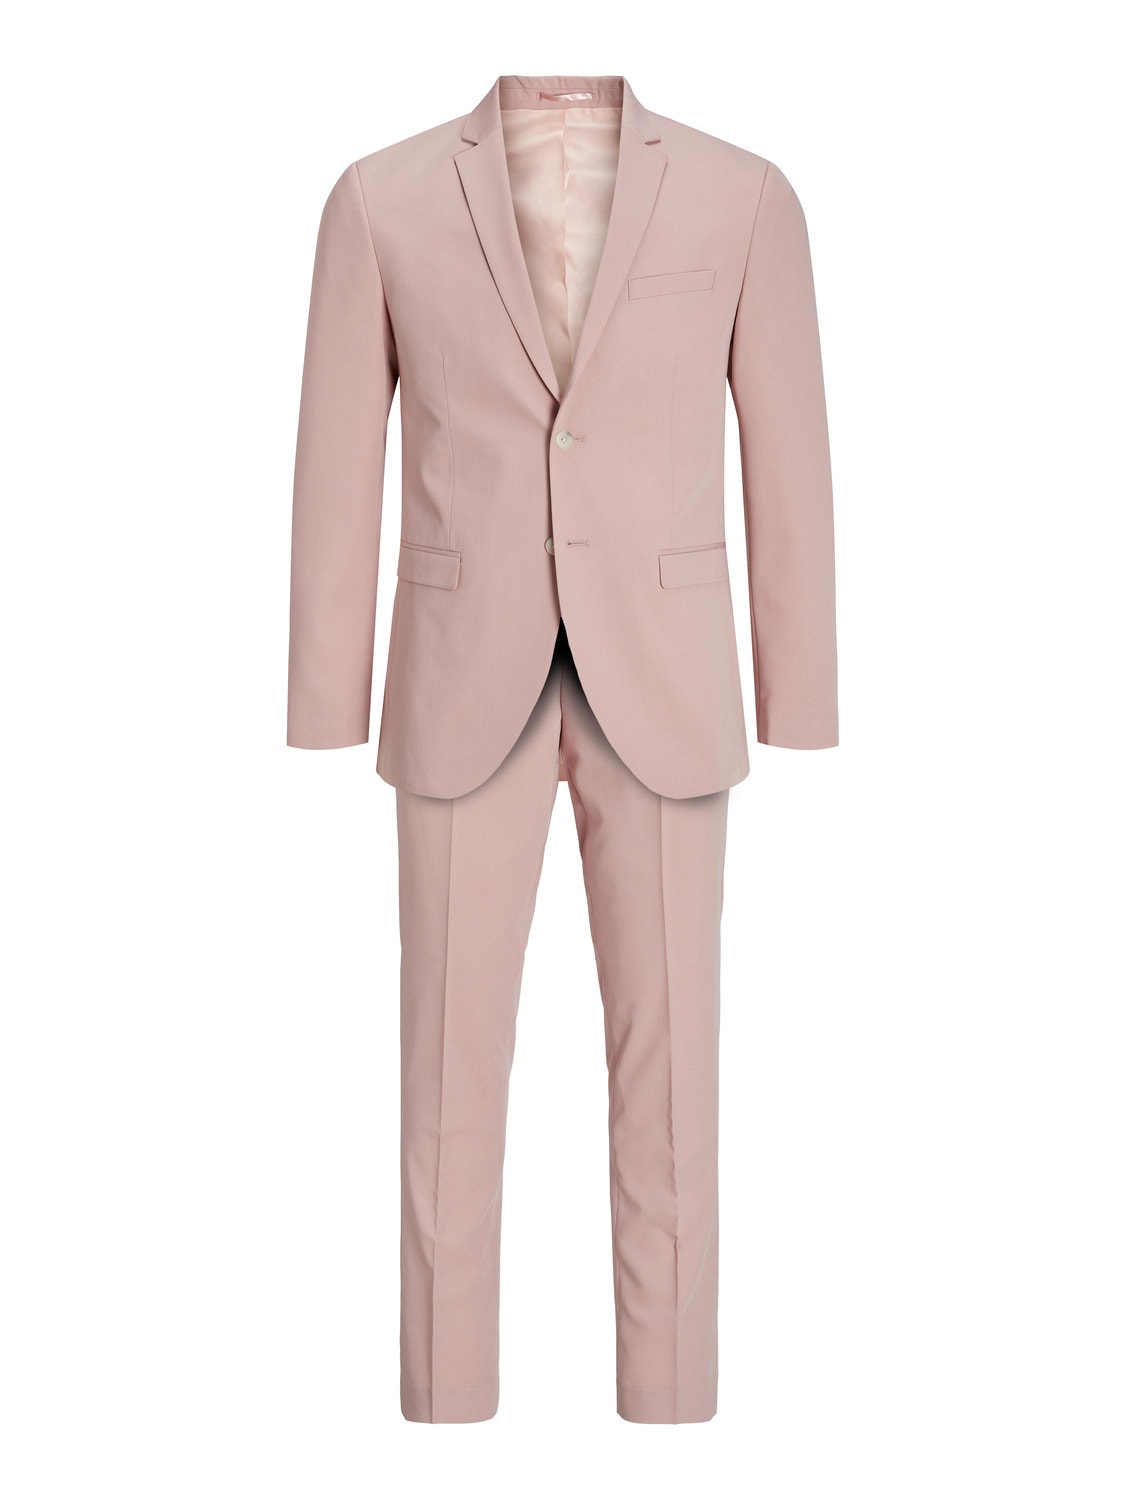 Jack & Jones JPRFRANCO Super Slim Fit Suit -Rose Tan - 12181339